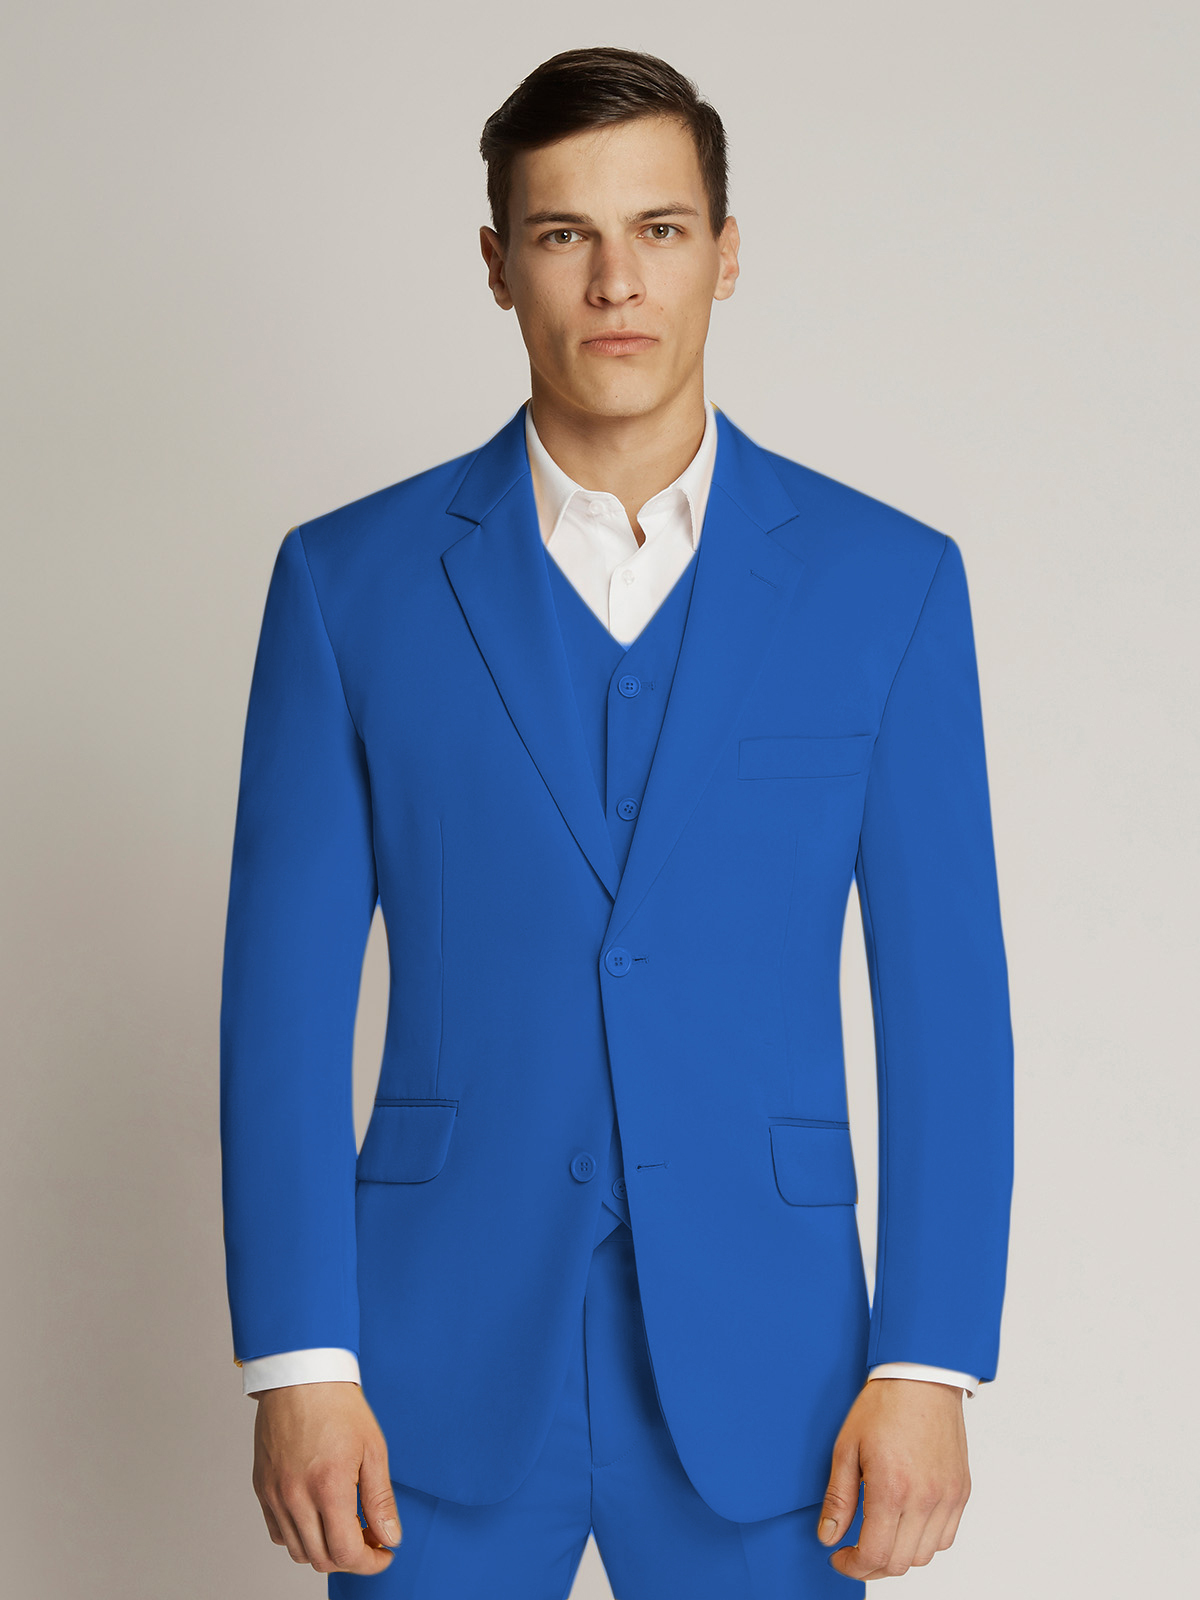 Men's Royal Blue Twill Slim Fit Suit Jacket